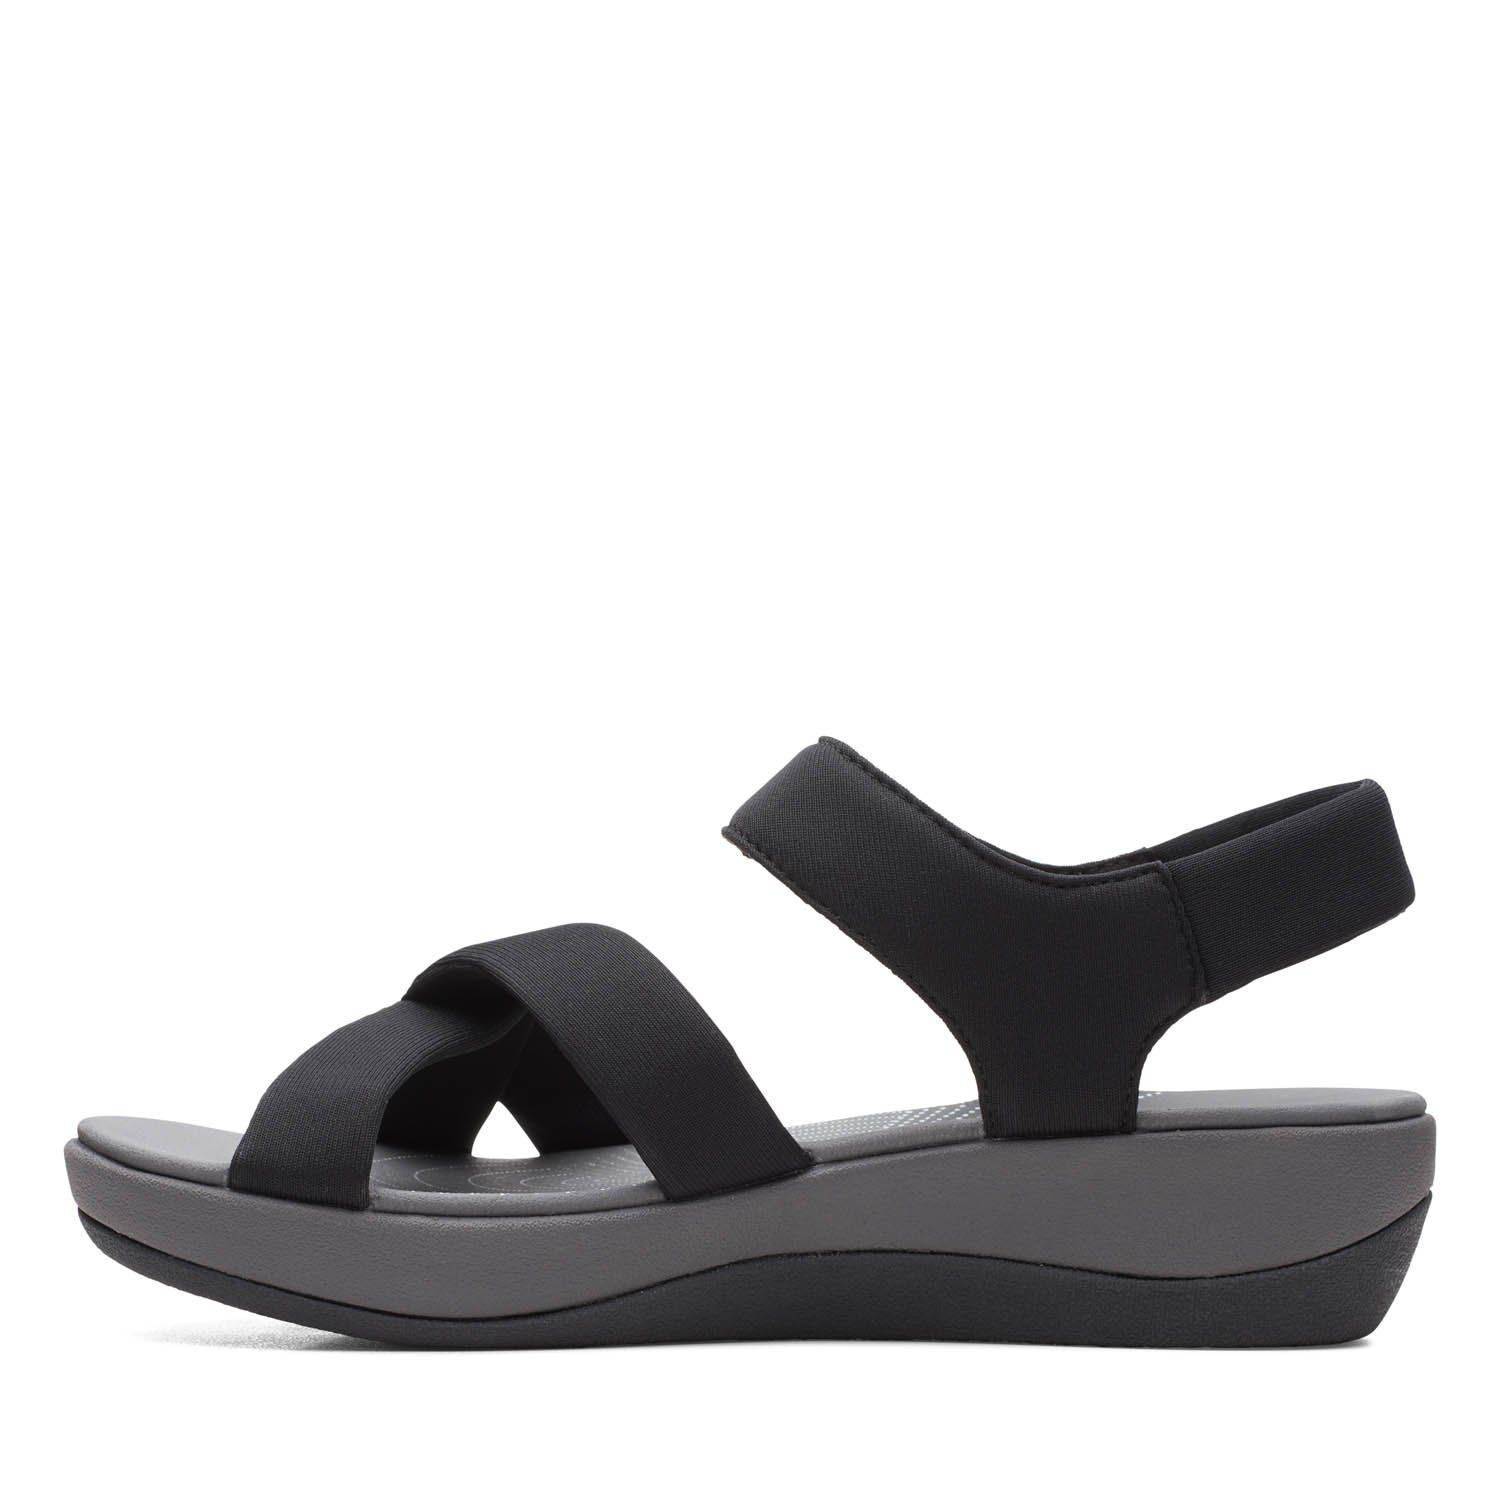 Женские сандалии Clarks (Arla Gracie 26159148), черные, цвет черный, размер 37.5 - фото 3